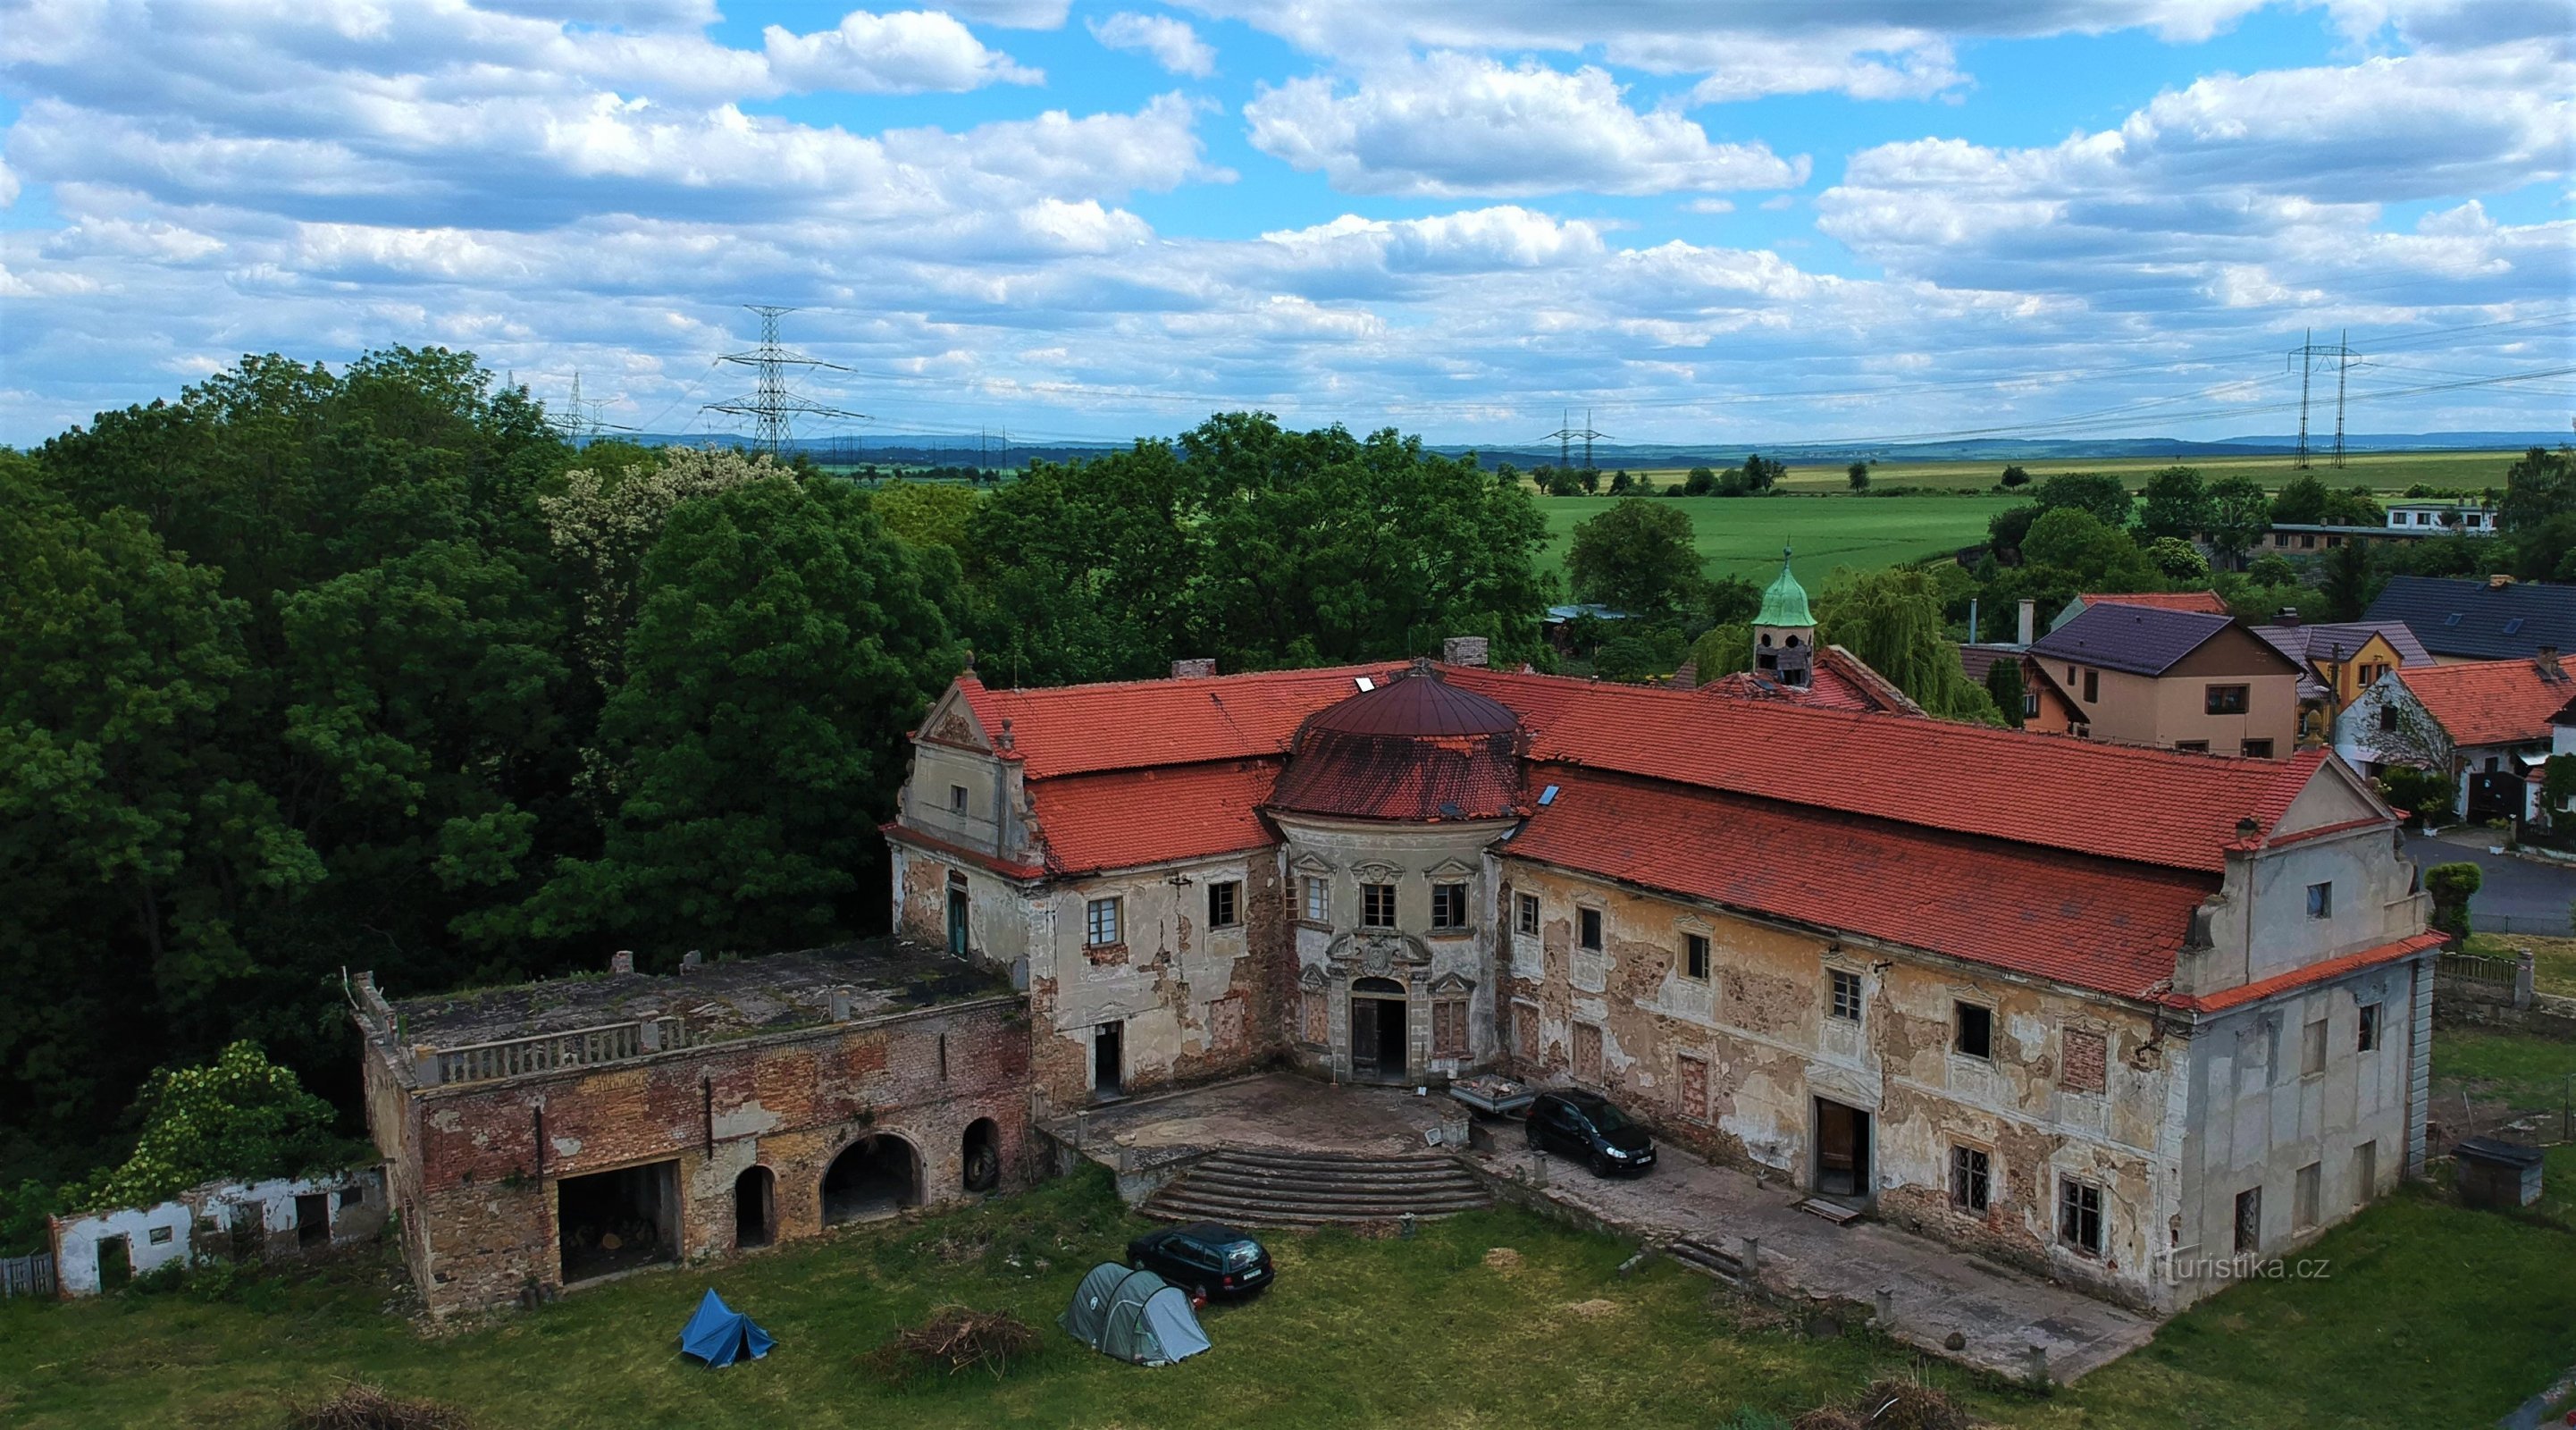 Il castello di Poláky - una perla barocca che si sta risvegliando